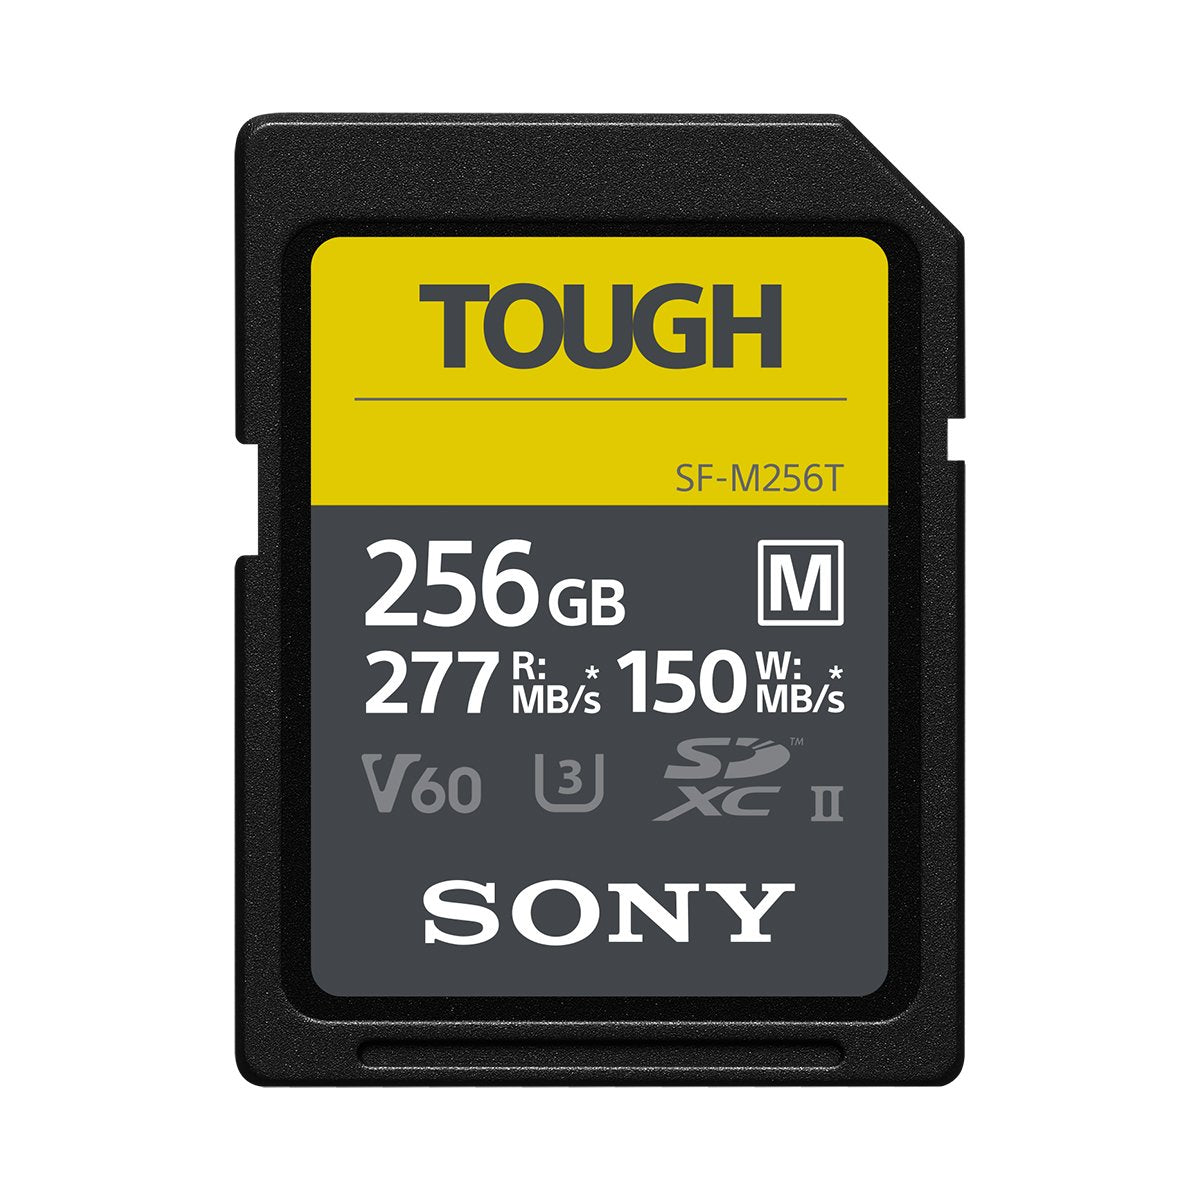 Sony 256GB SF-M TOUGH UHS-II SDXC (V60) Card